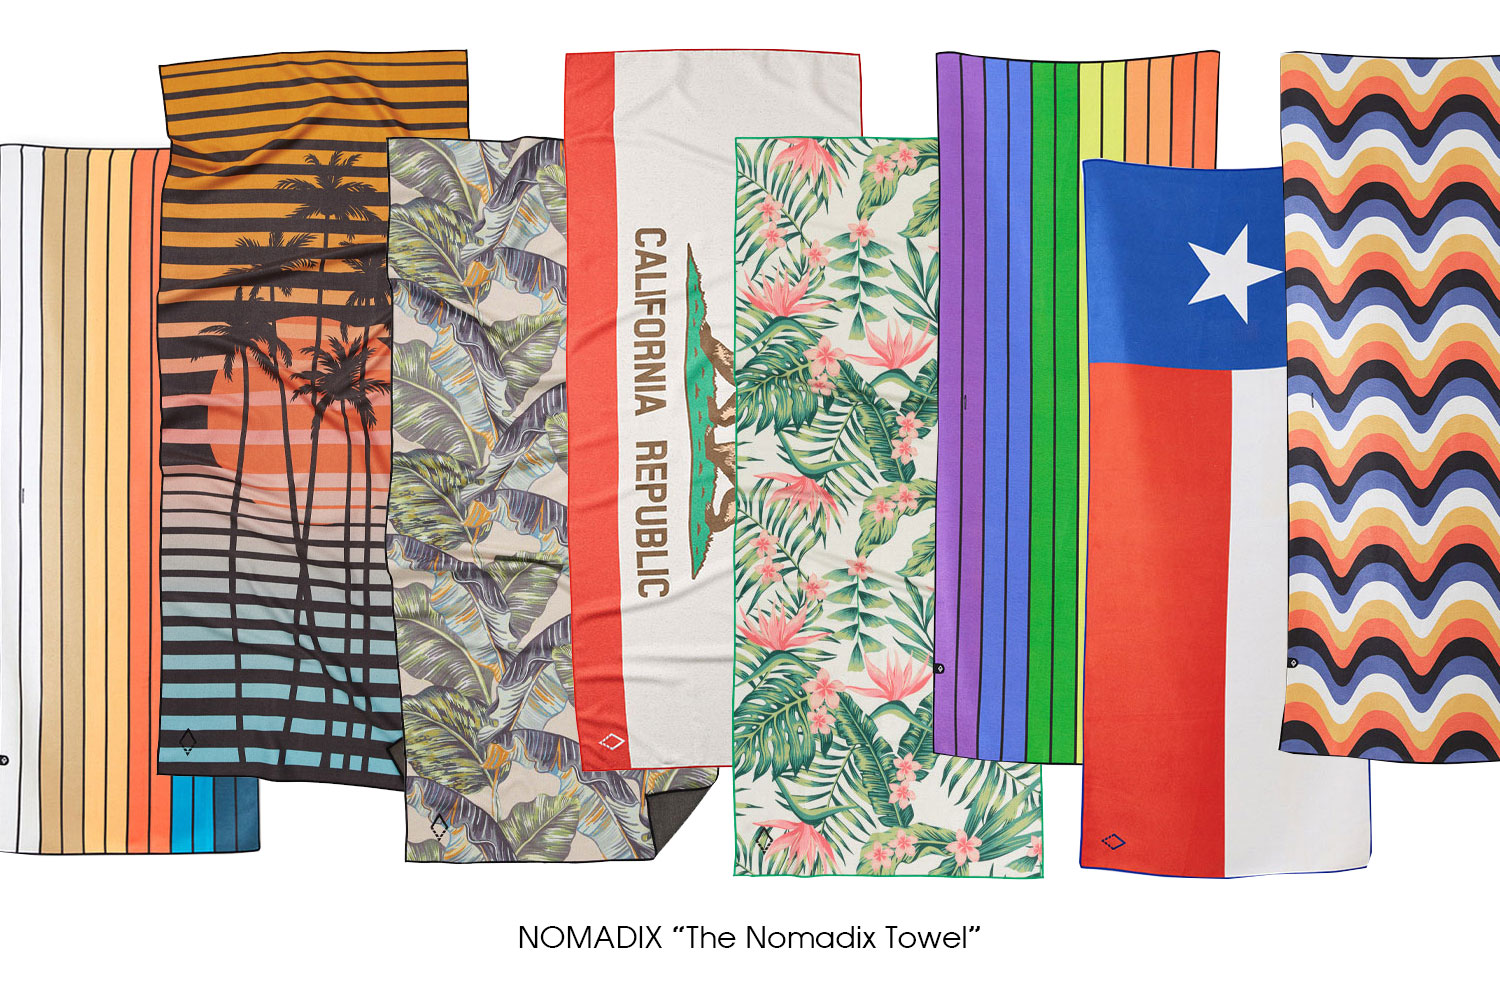 NOMADIX "The Nomadix Towel"